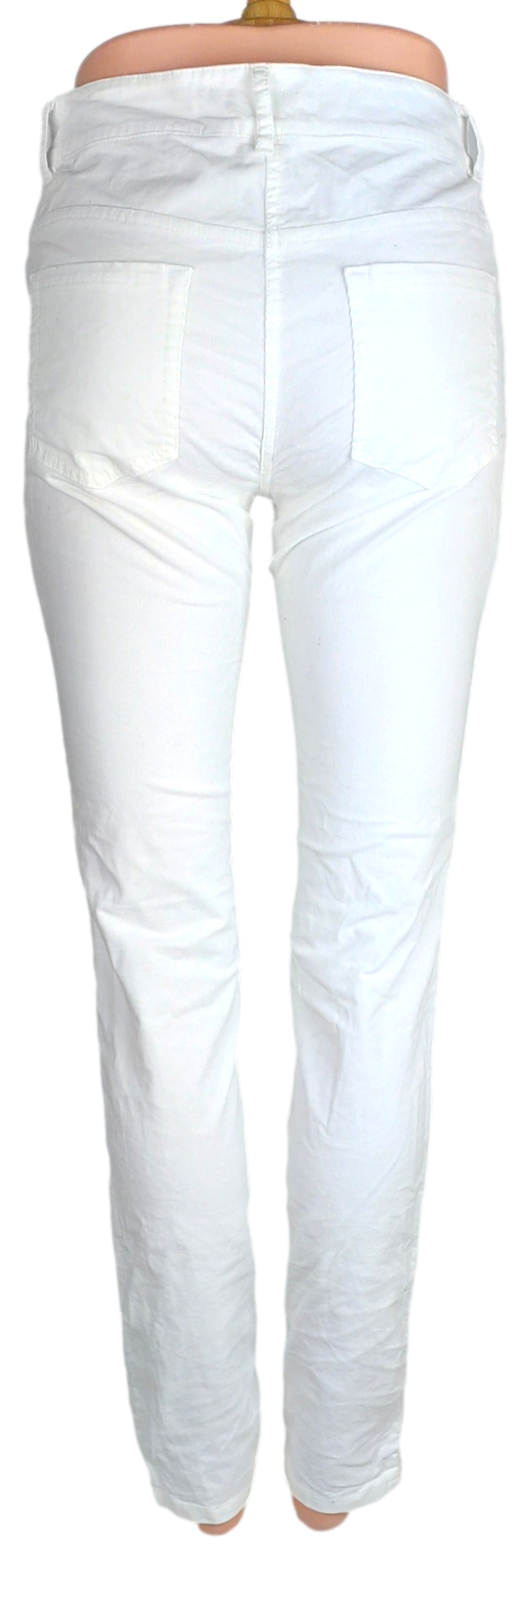 Pantalon Monoprix -Taille 36